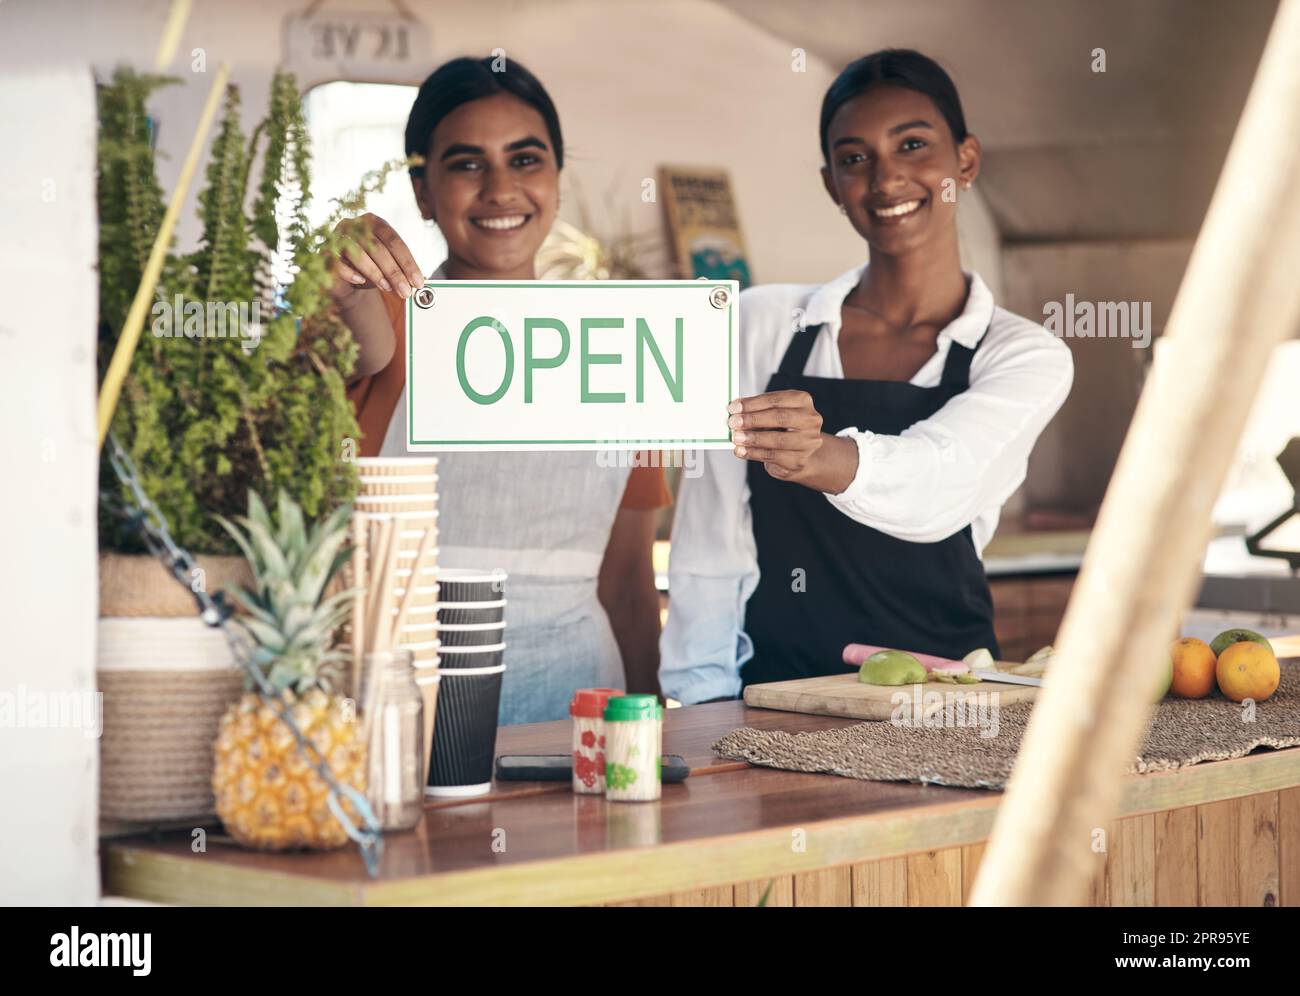 Toujours poursuivre vos objectifs. Deux jeunes femmes d'affaires tenant un panneau ouvert dans leur camion alimentaire. Banque D'Images